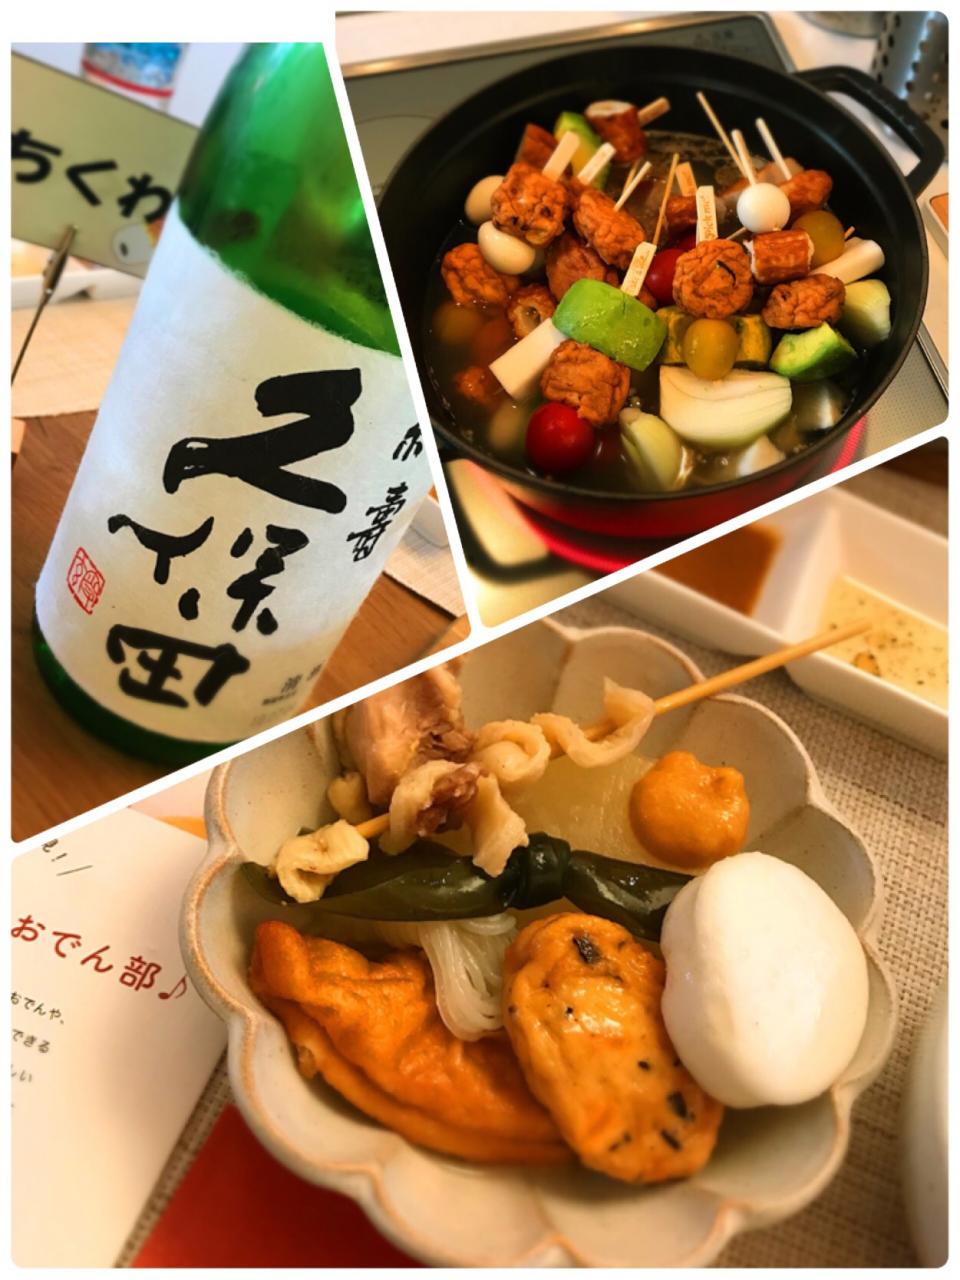 おでんと日本酒を楽しむイベント。いちまさの練り製品もとっても美味しかったのですが、いろいろなアレンジでおでんの概念が変わりました♬アボカドのおでんははじめて！大満足なイベントでした♬
#いちまさわいわいおでん部